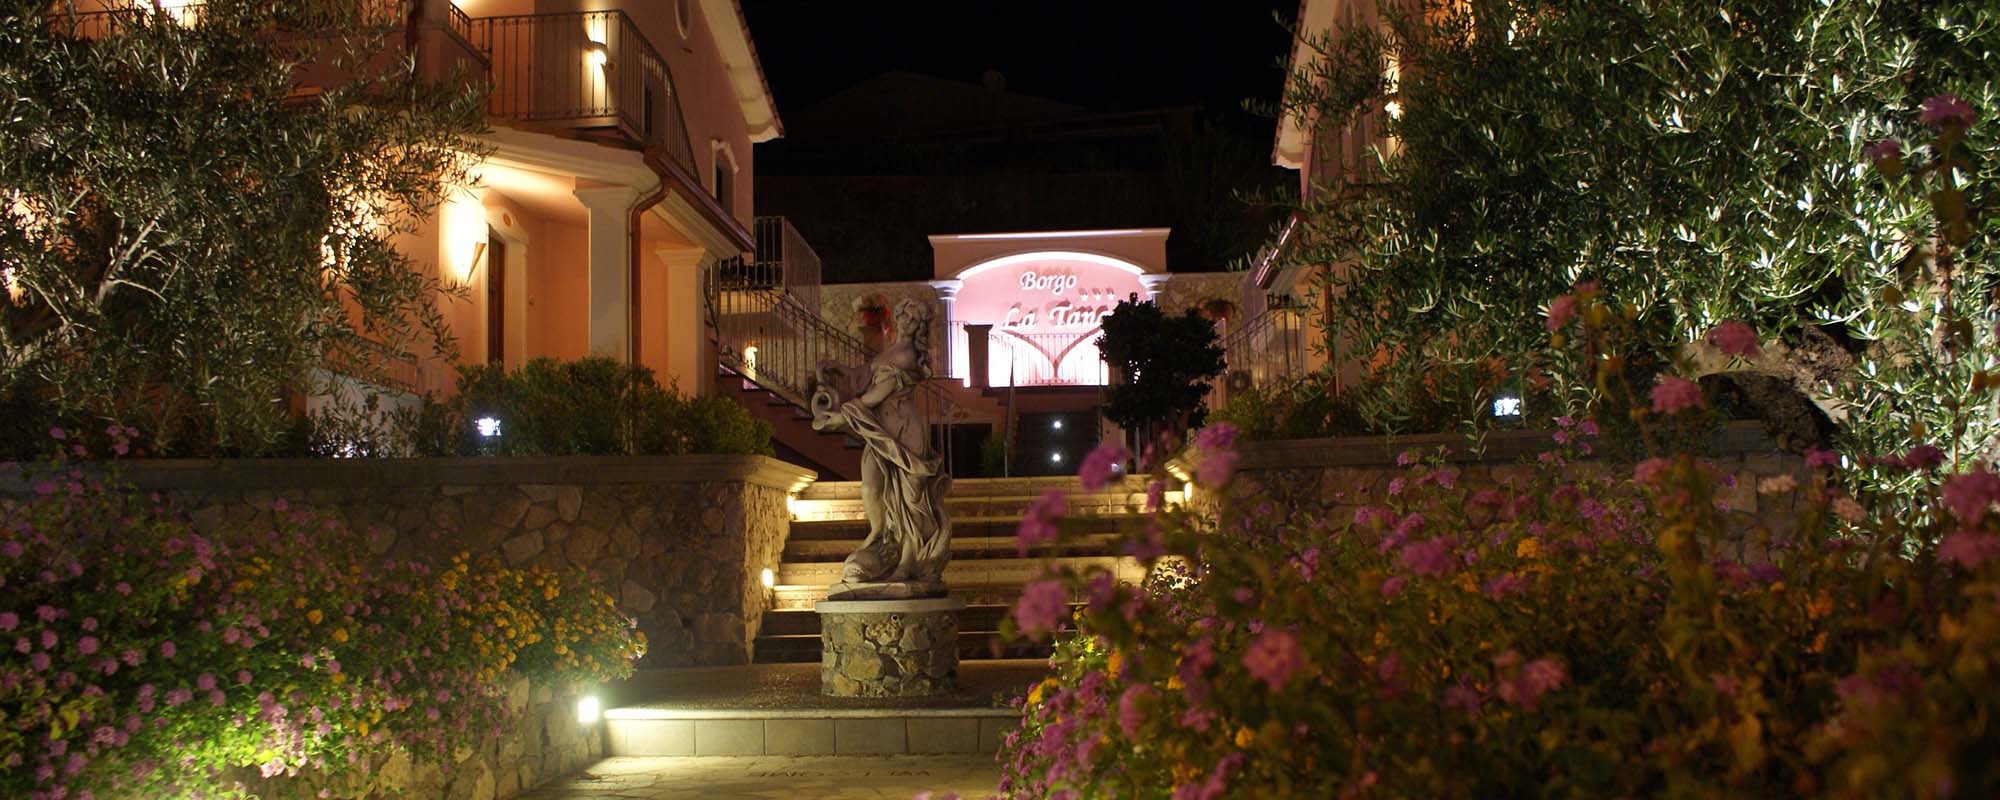 SliderHome Hotel Ristorante Borgo La Tana